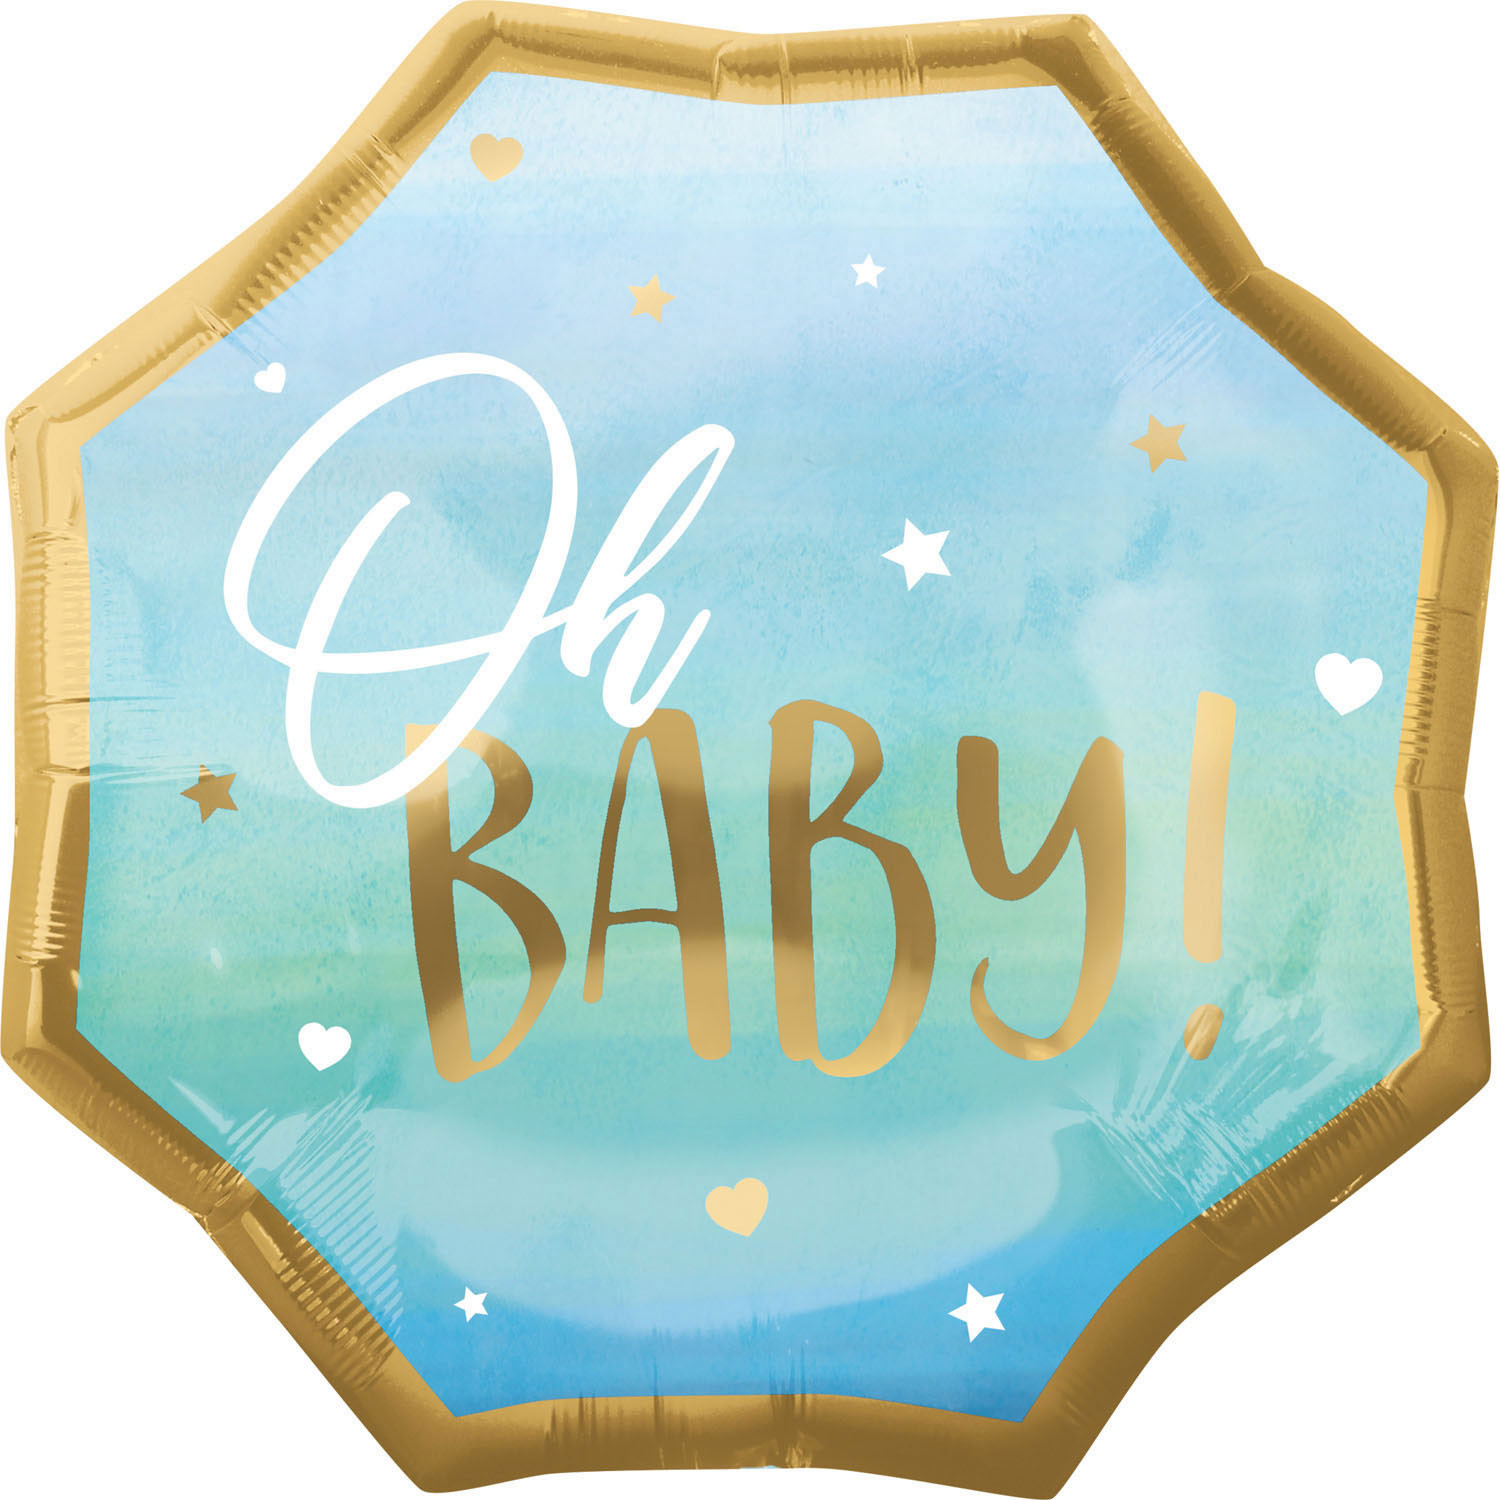 Balon na Narodziny chłopca foliowy "Oh Baby!" / 55 cm